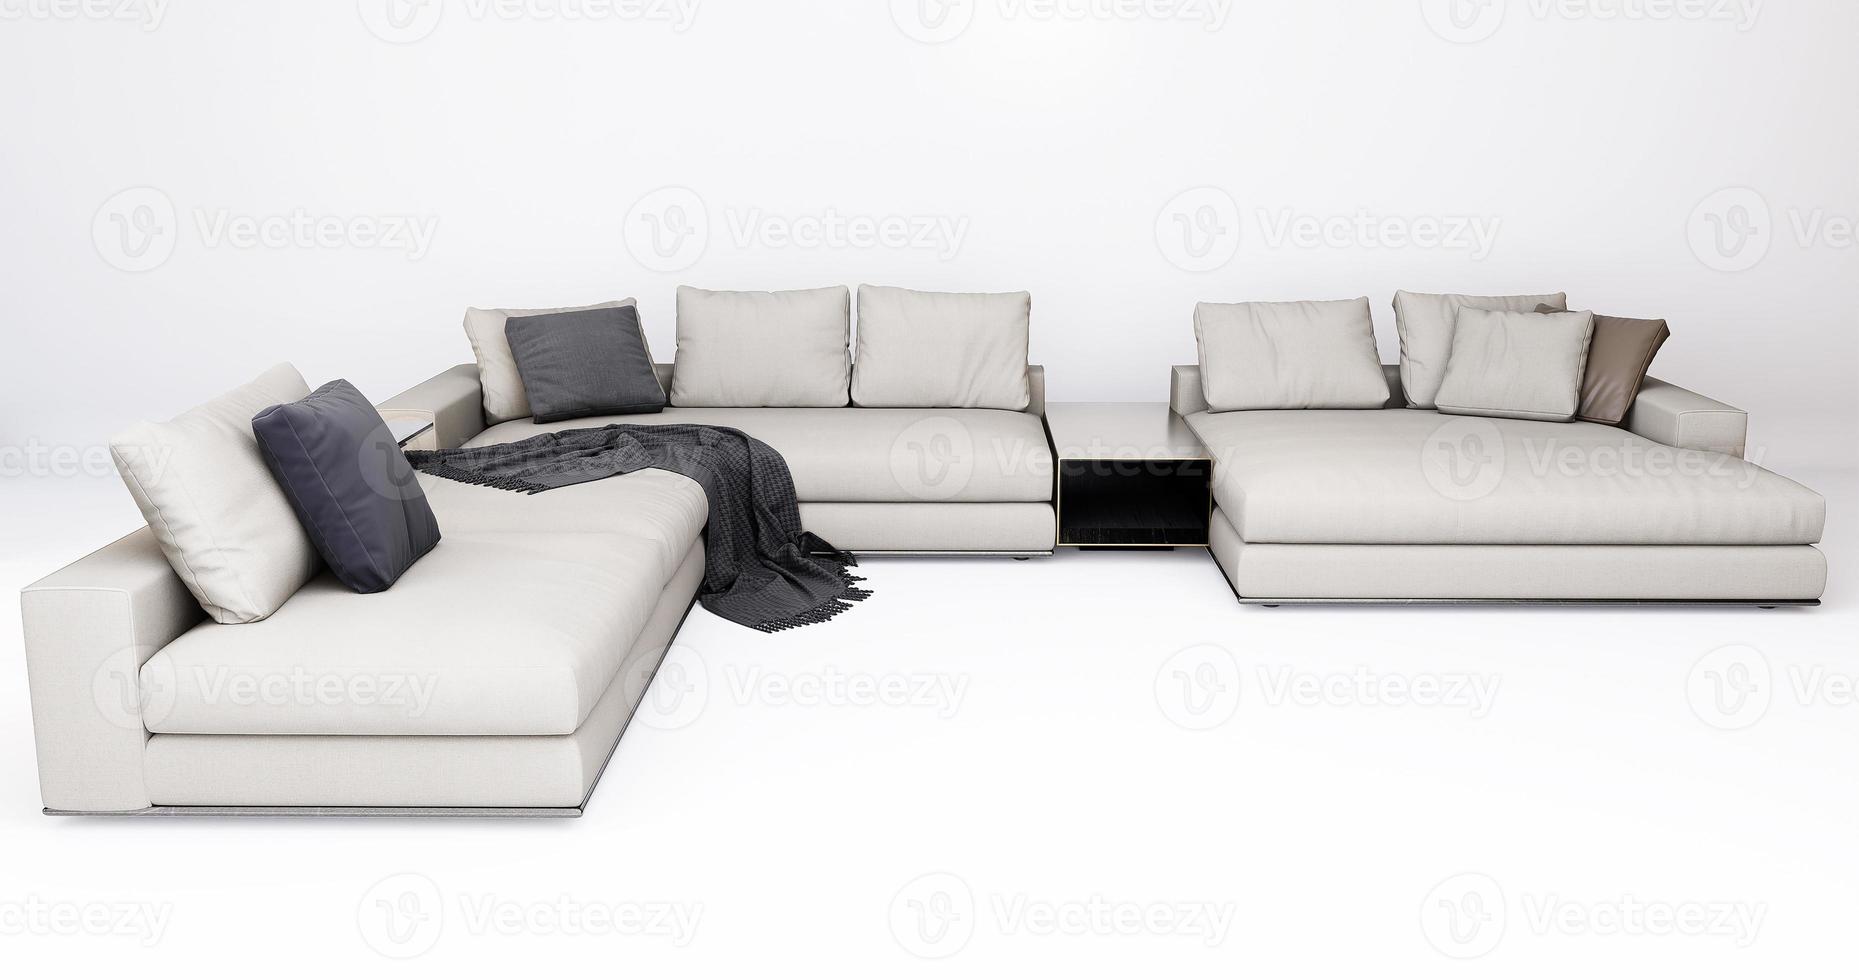 3d möbel modern tyg hörn flersits isolerat på en vit bakgrund med klippning väg, dekoration design för levande rum foto